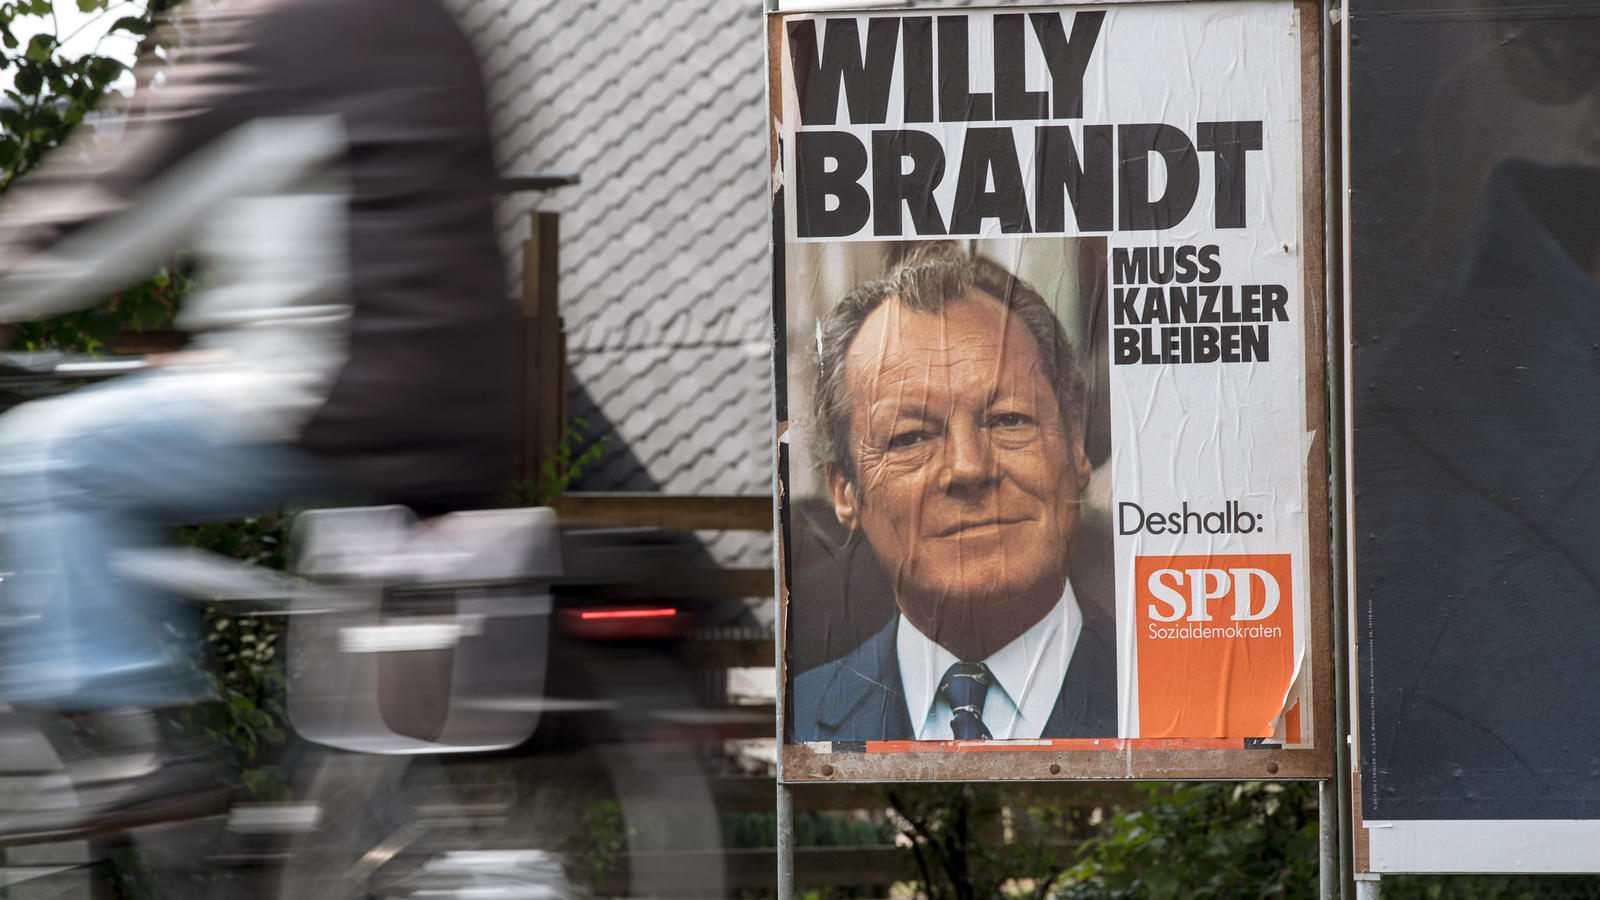 Ein Wahlplakat des ehemaligen Bundeskanzlers Willy Brandt steht am 07.09.2017 in Leverkusen (Nordrhein-Westfalen) am Straßenrand. Ob das Wahlplakat aus dem Jahr 1972 Einfluss auf den Ausgang der Bundestagswahl am 24.09.2017 haben wird, ist nicht abse